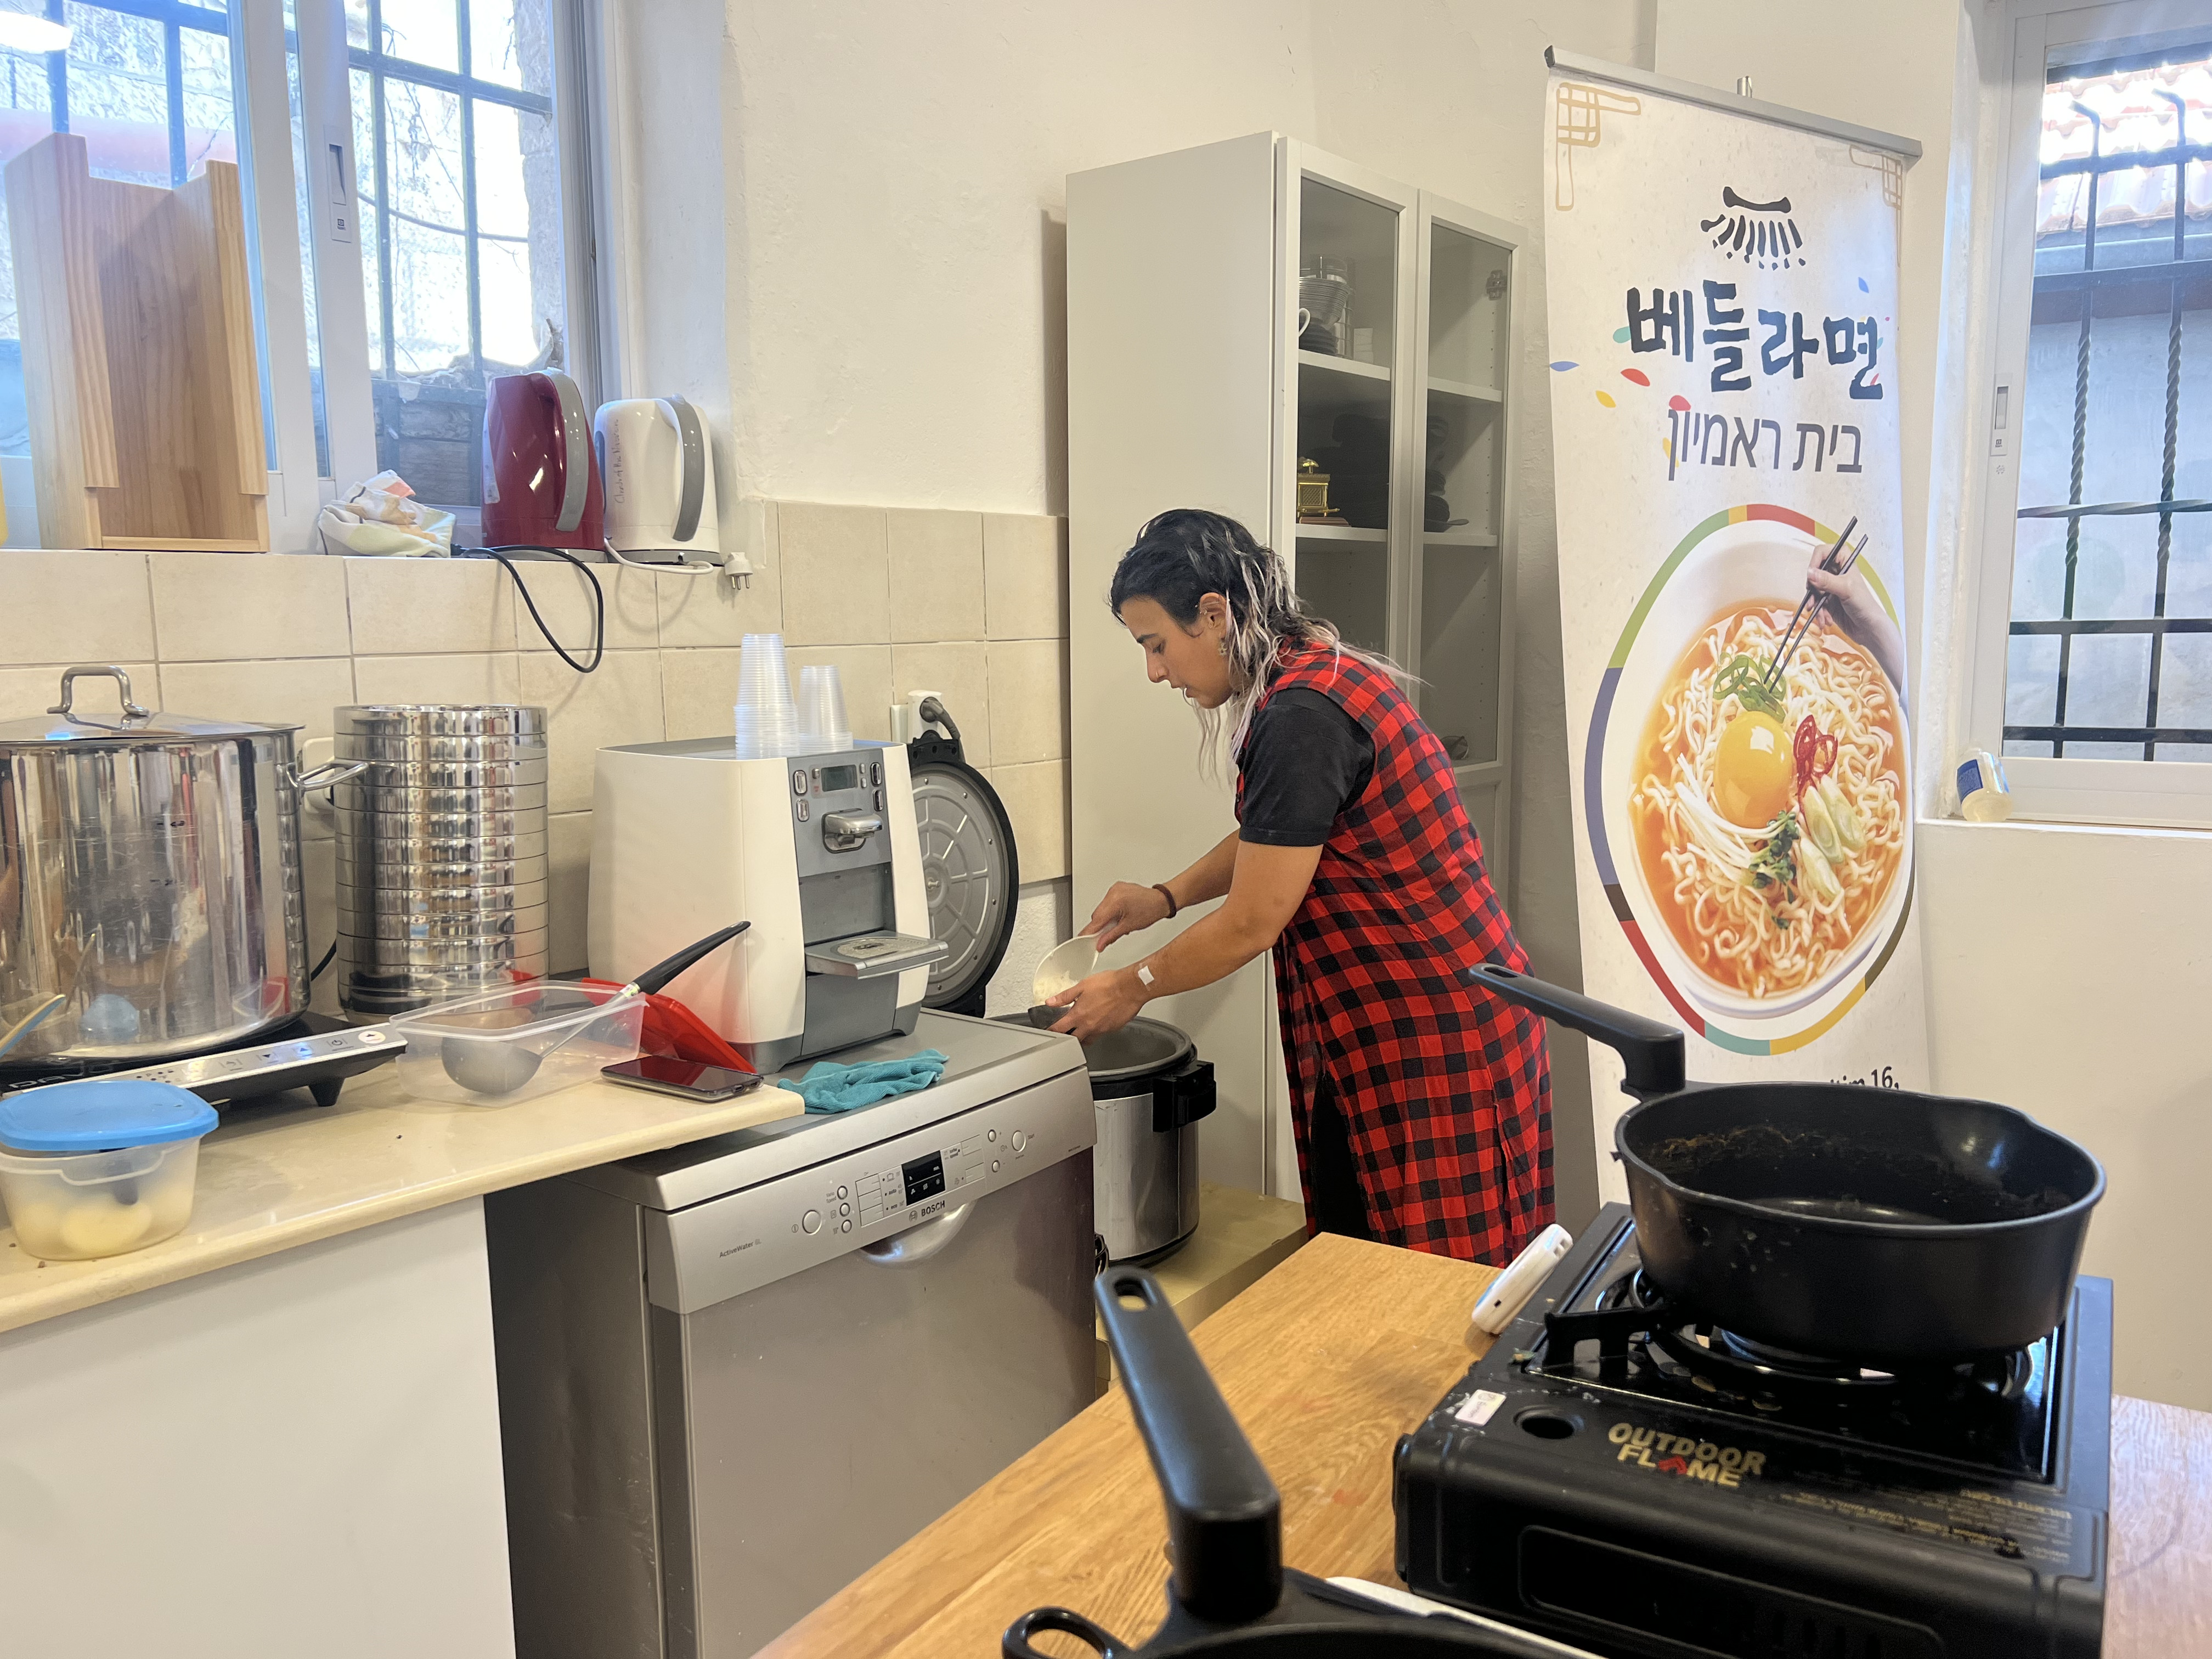 Аснат помогает корейско-израильскому клубу, готовя и подавая еду